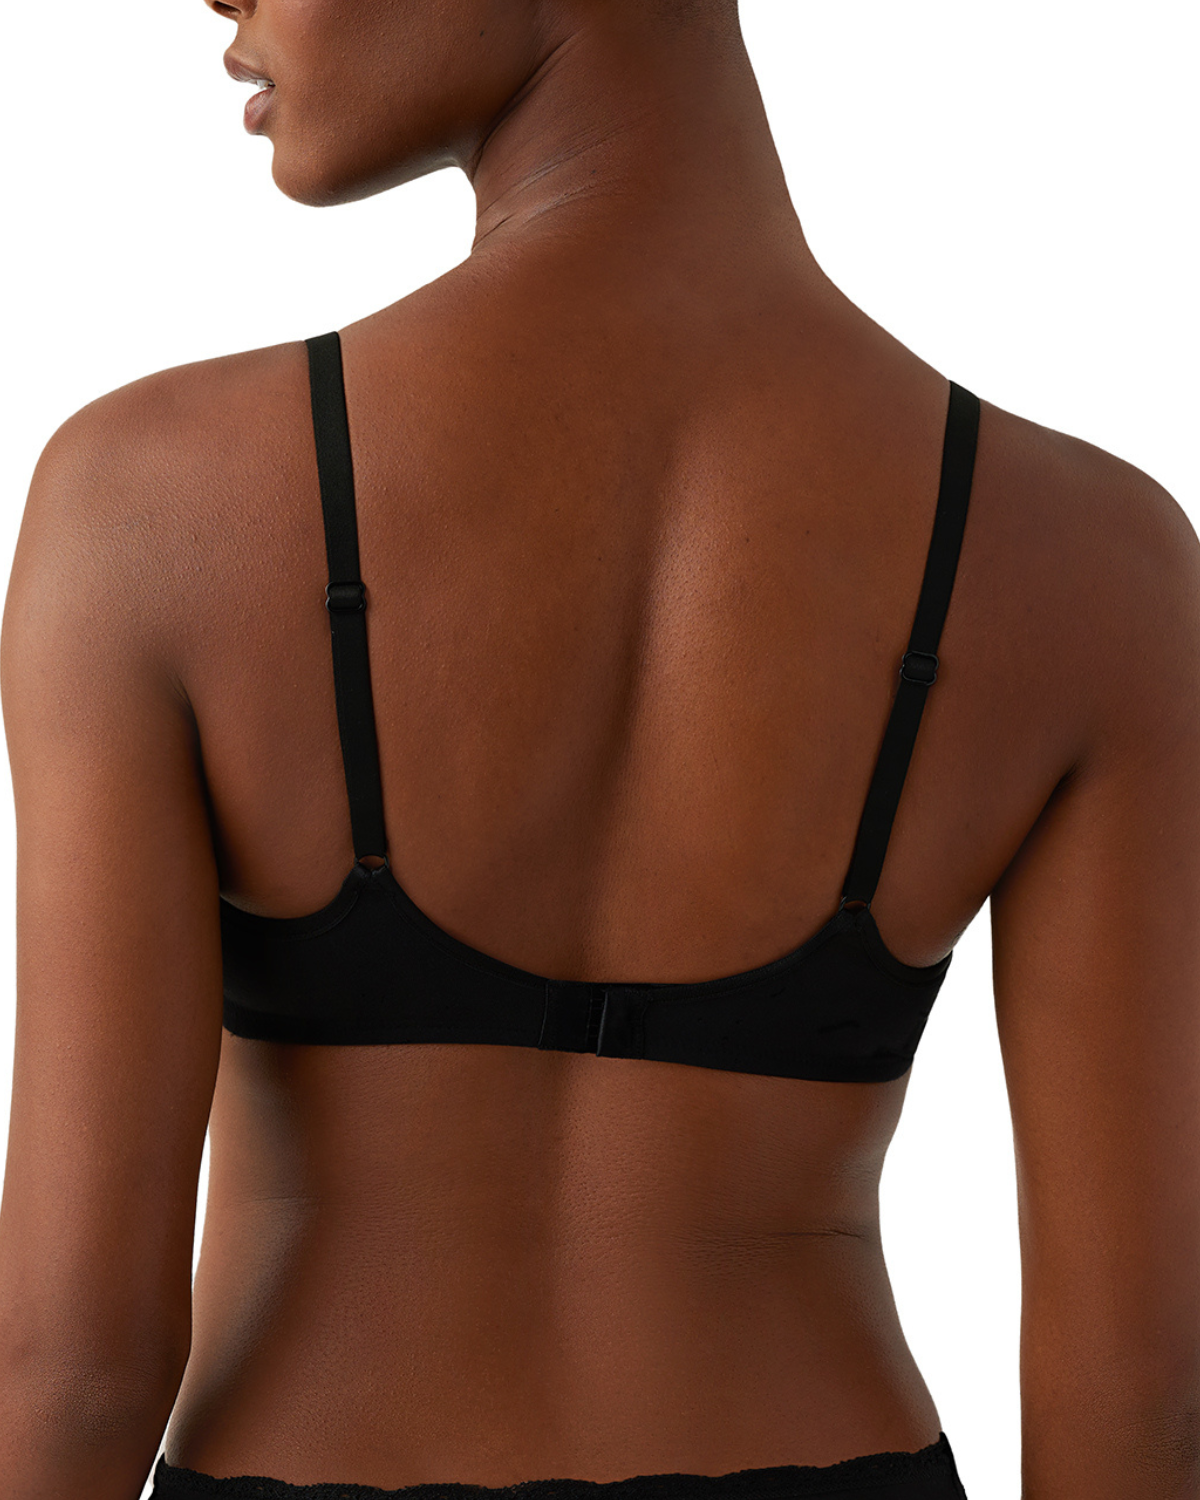 Model wearing a scoop neck underwire t-shirt bra in black